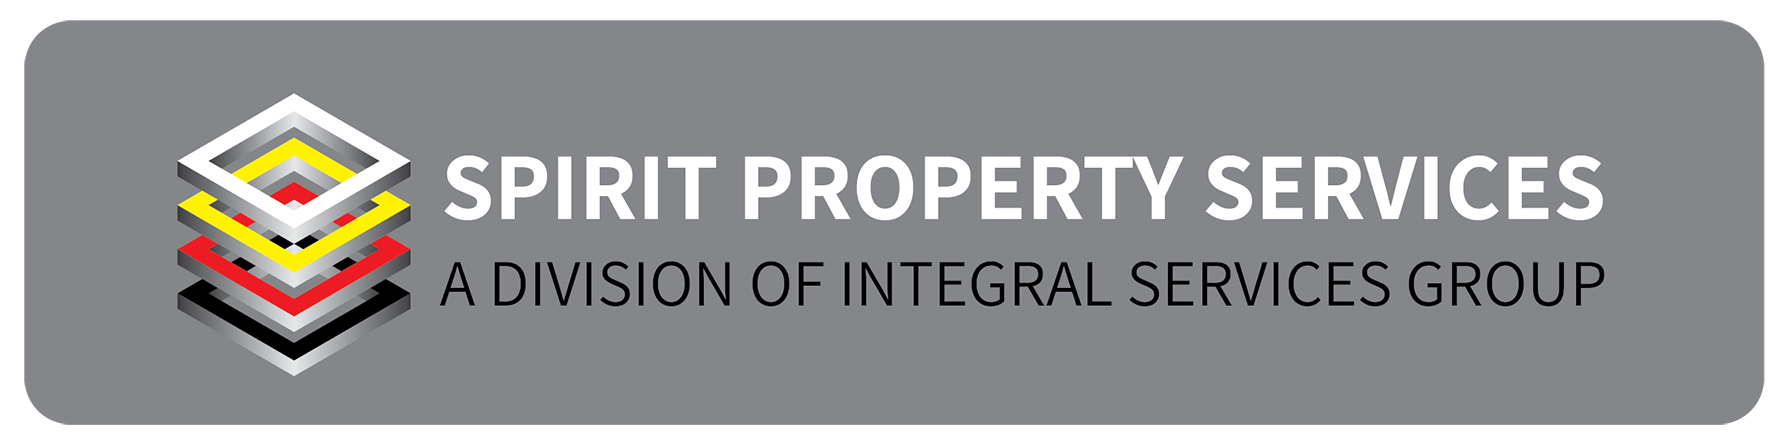 spirit property logo